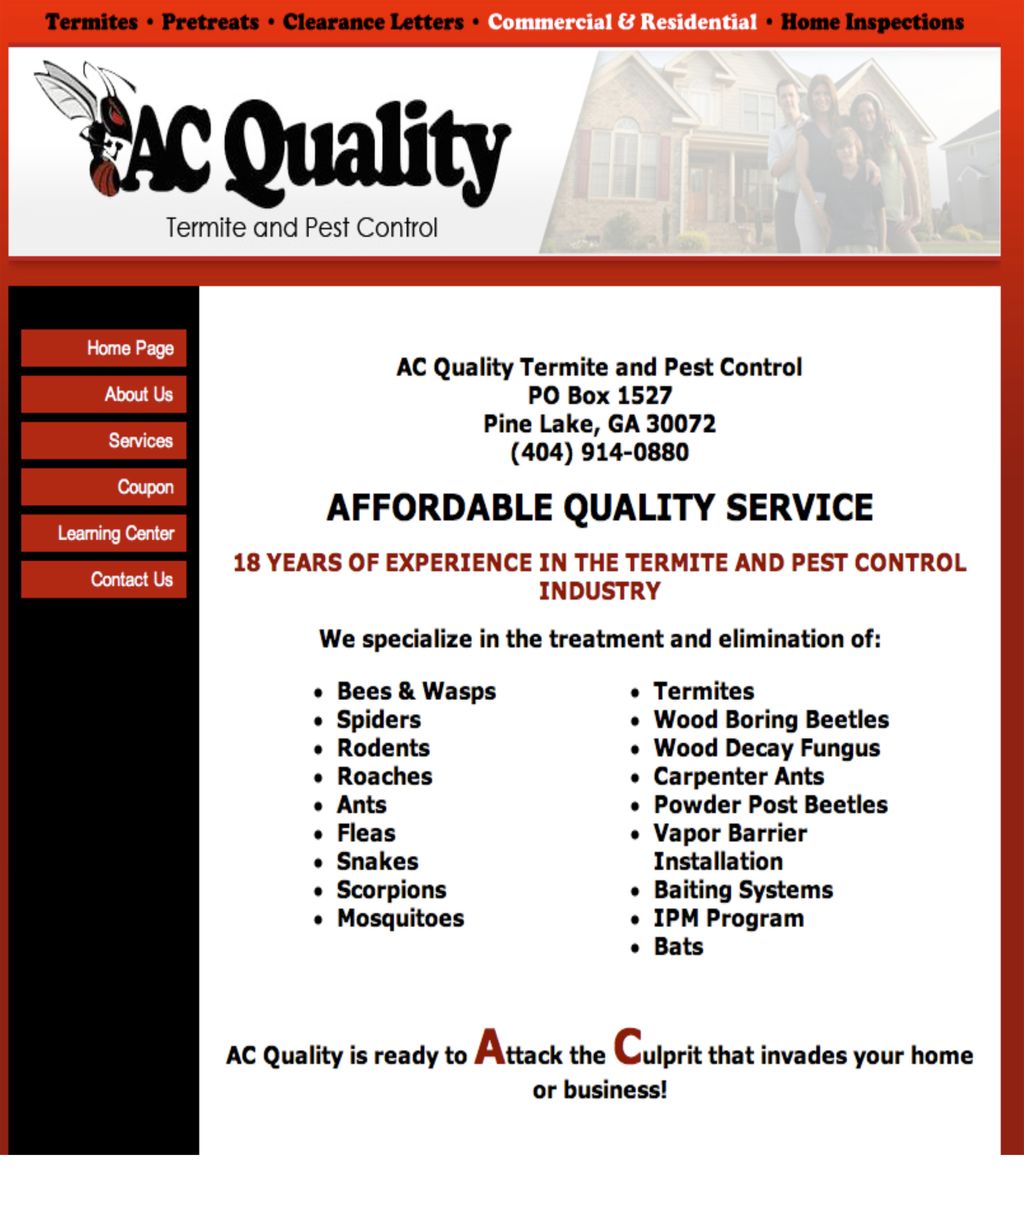 AC Quality Termite & Pest Control